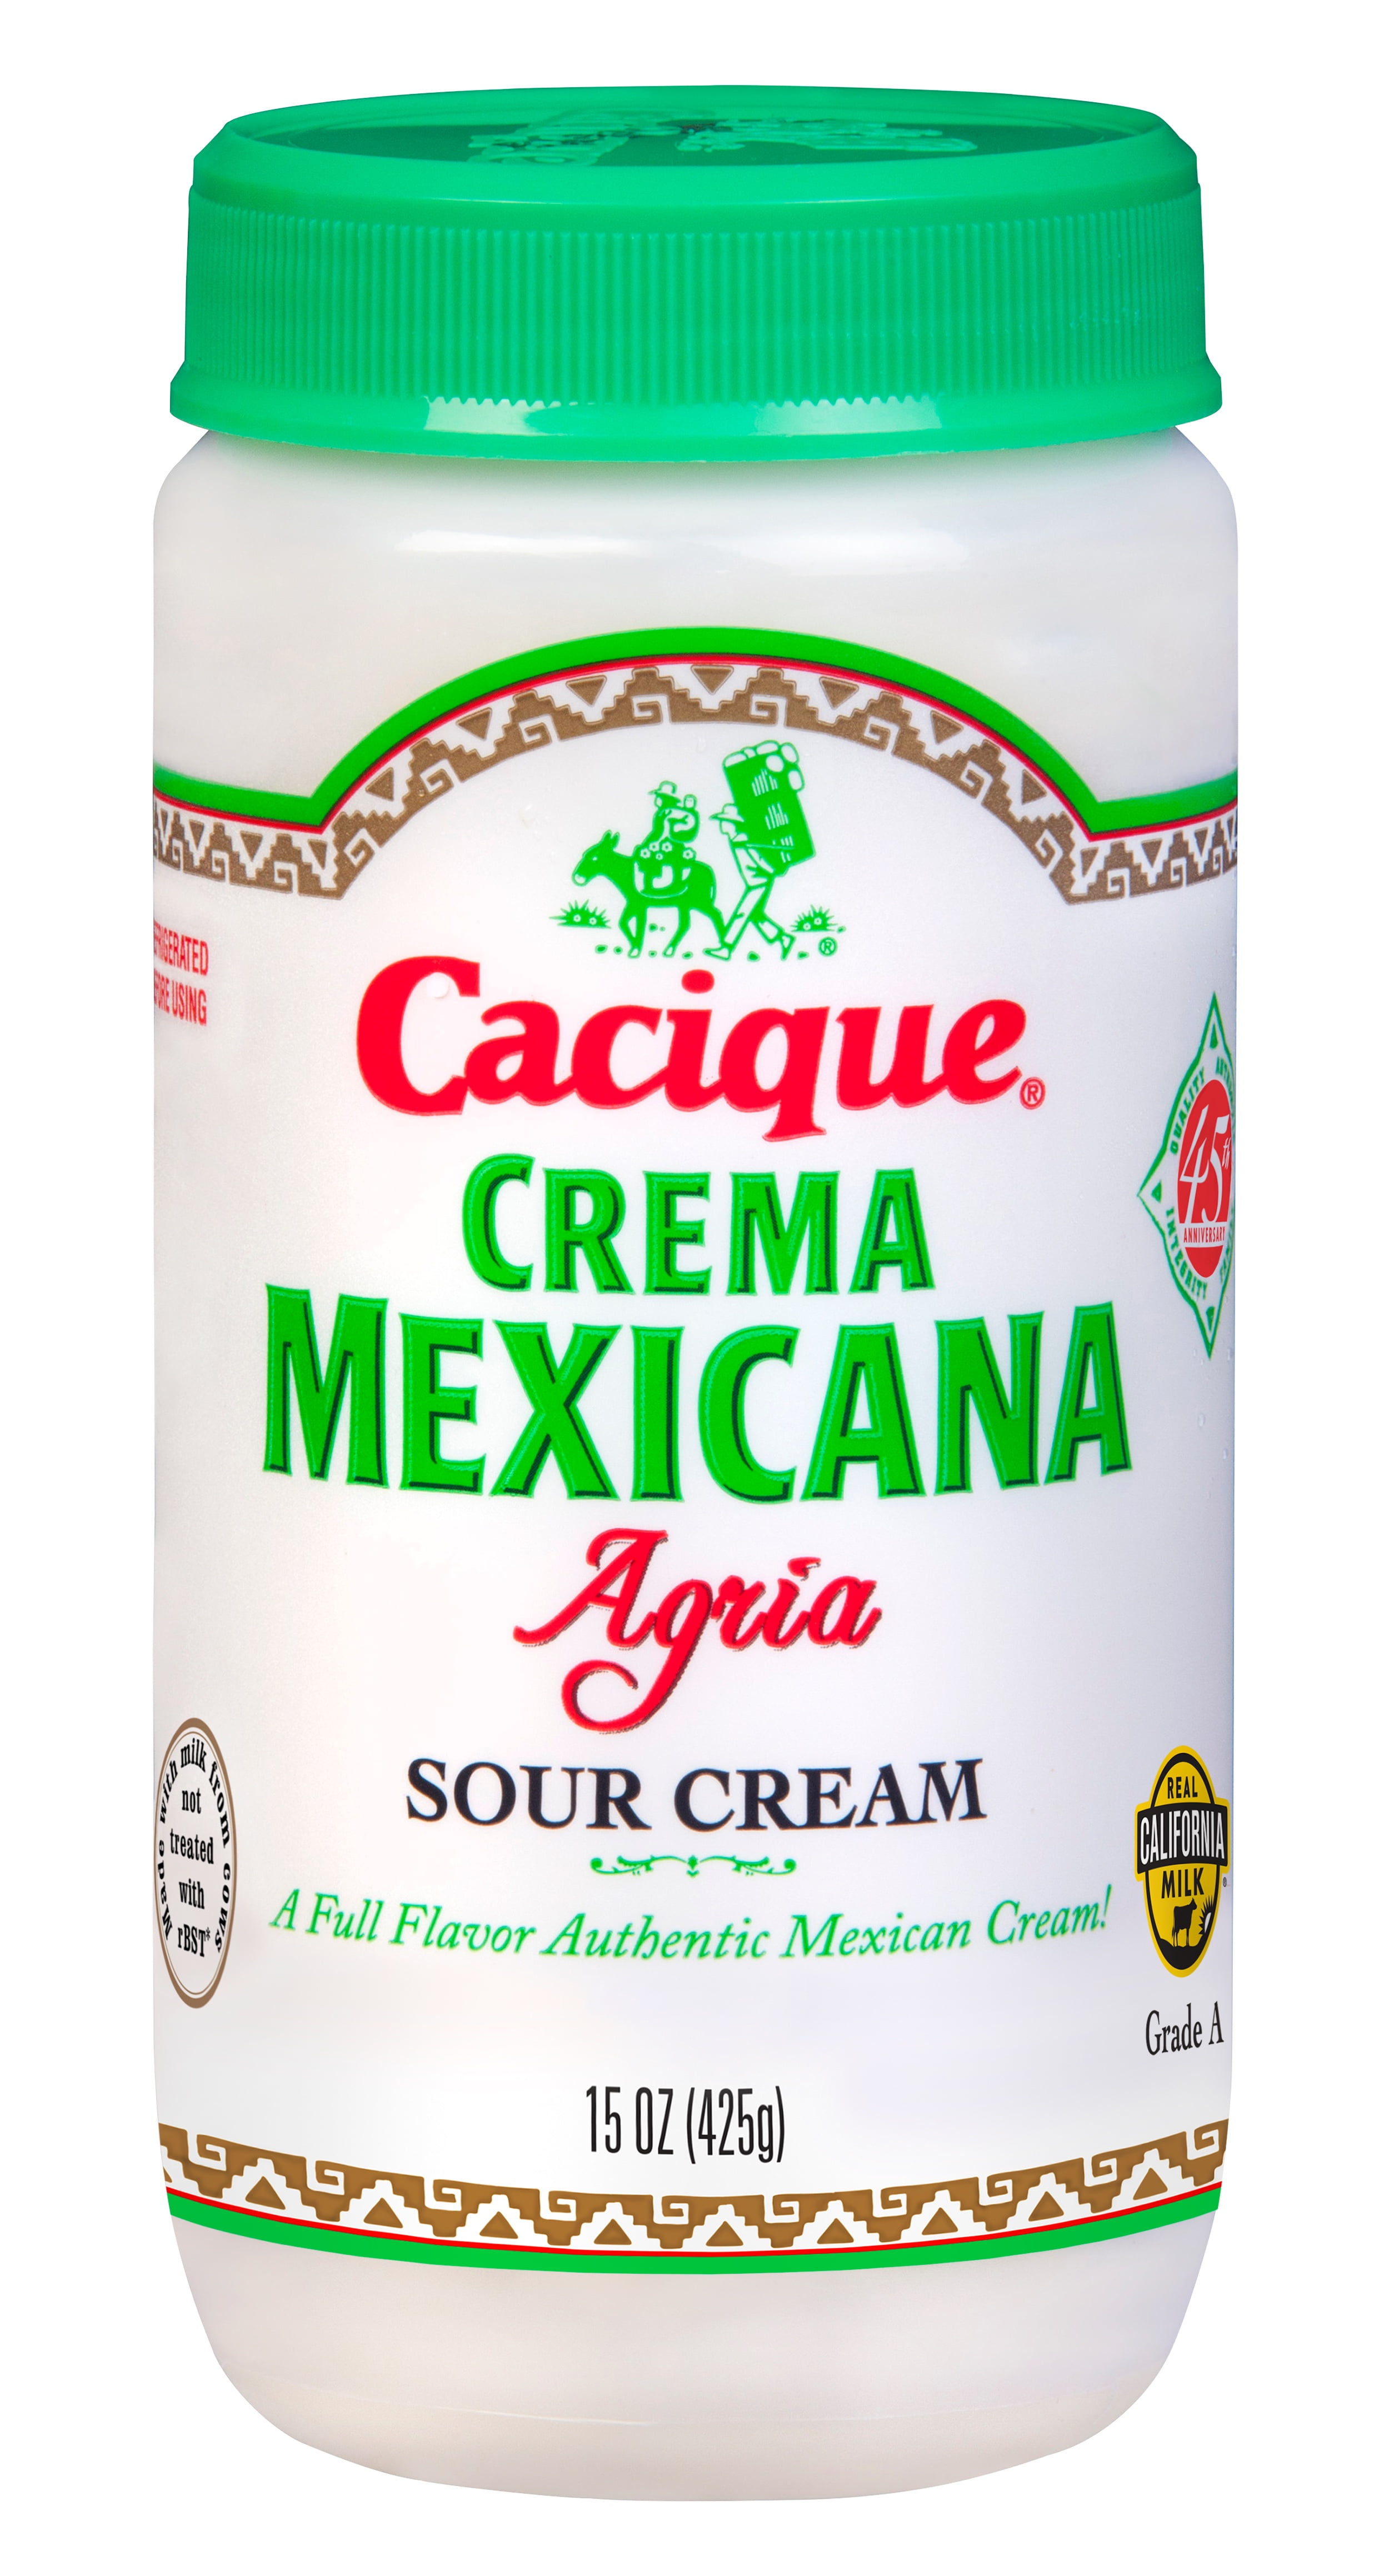 Cacique Crema Mexicana Agria Sour Cream, 15 Oz. - Walmart.com - Walmart.com